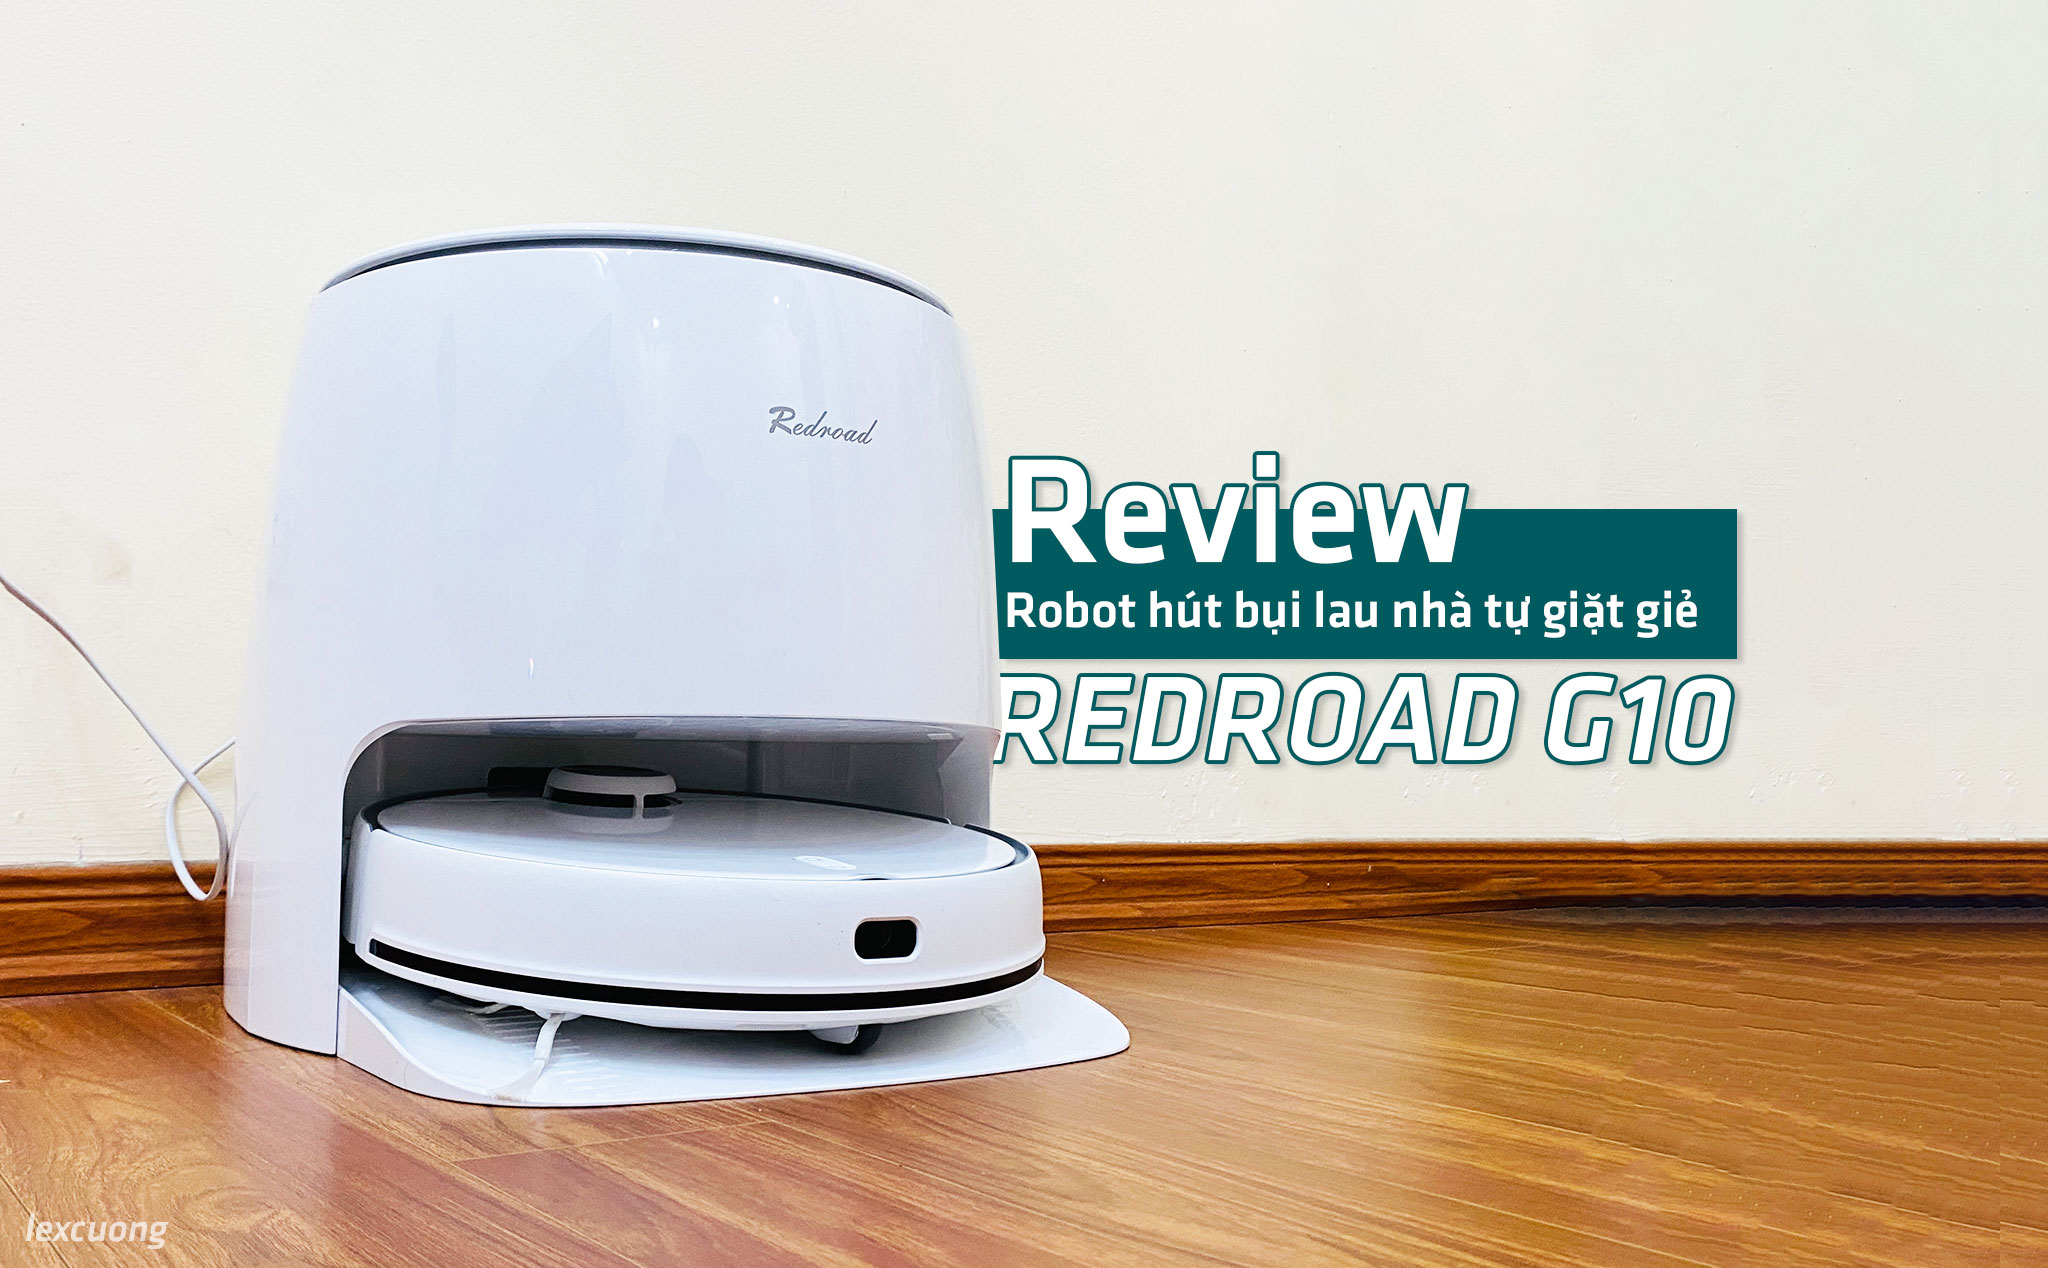 Review Redroad G10: Robot hút bụi lau nhà tự giặt giẻ